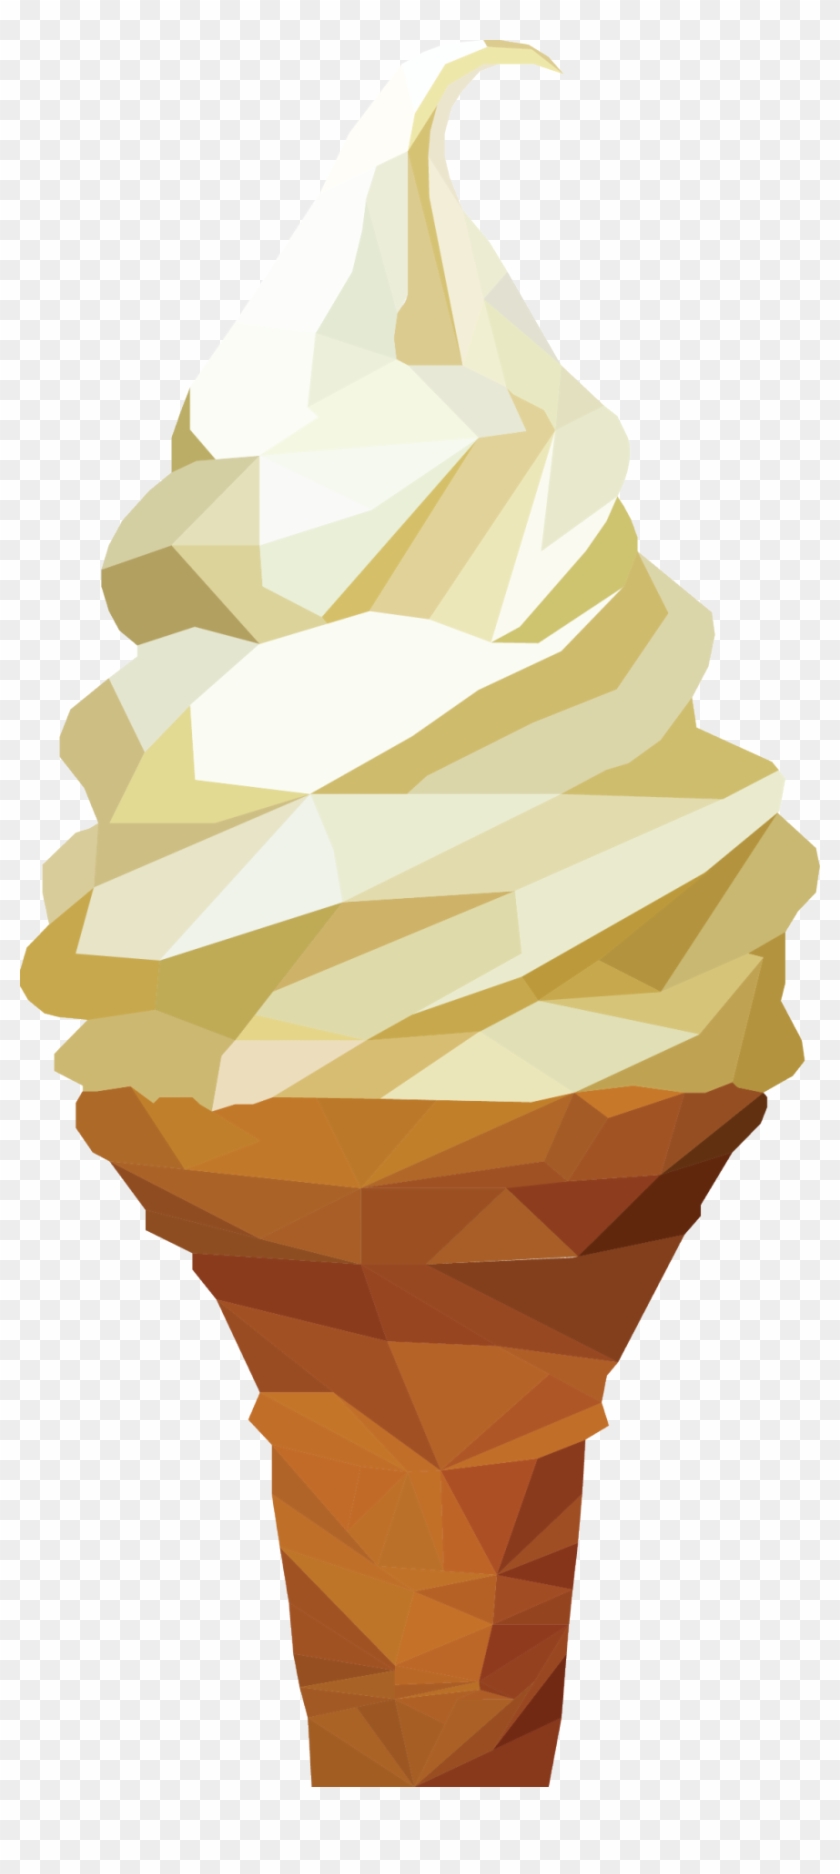 Ice Cream Cone Graphic Design - Ice Cream Design Png #1081037